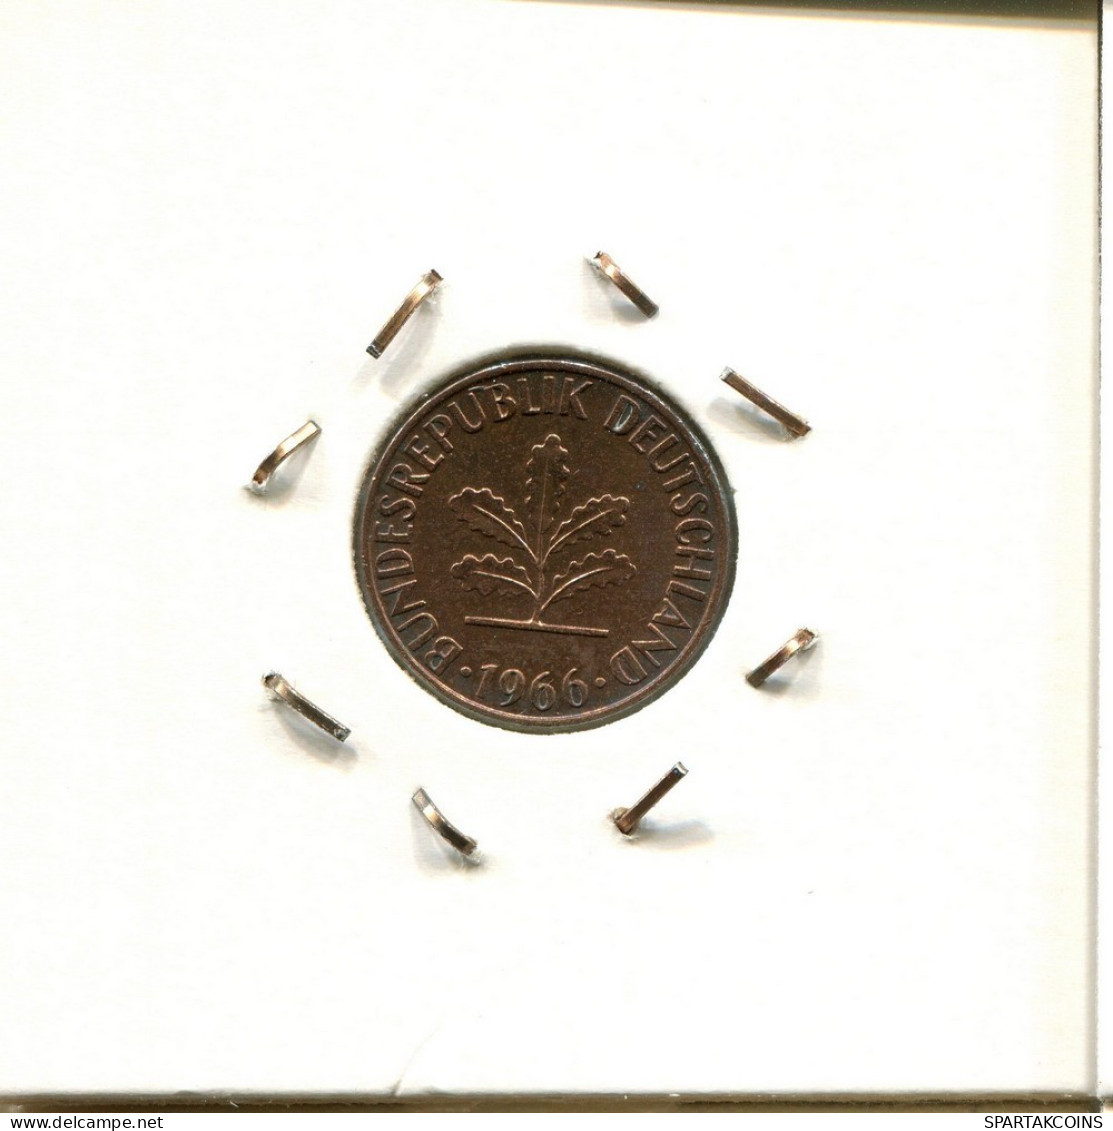 1 PFENNIG 1966 G WEST & UNIFIED GERMANY Coin #DC009.U.A - 1 Pfennig